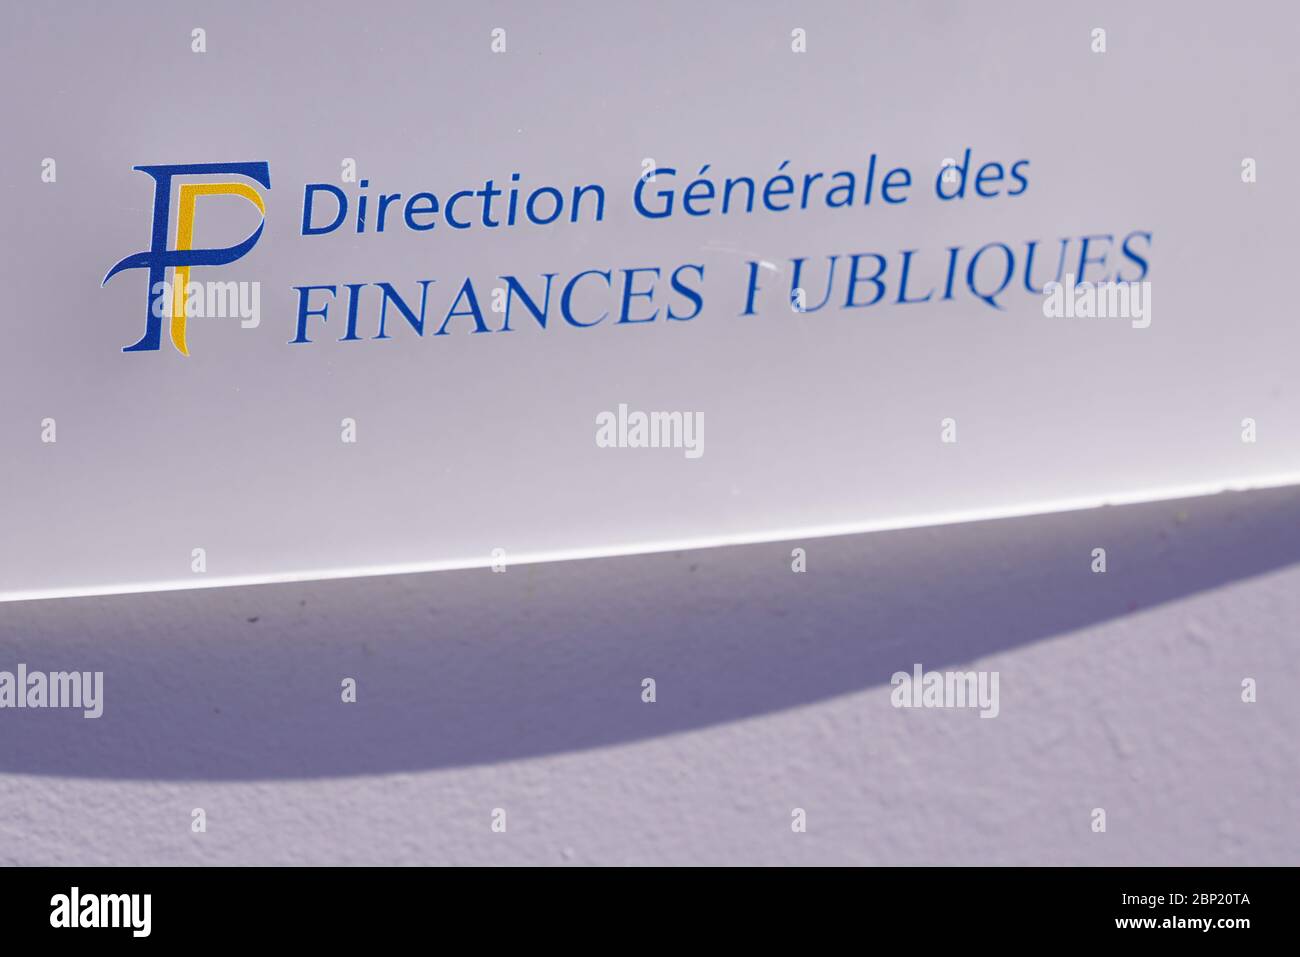 Bordeaux , Aquitaine / France - 05 14 2020 : direction generale des Finances Publiques logo Taxes office sign logo French public finance administratio Stock Photo